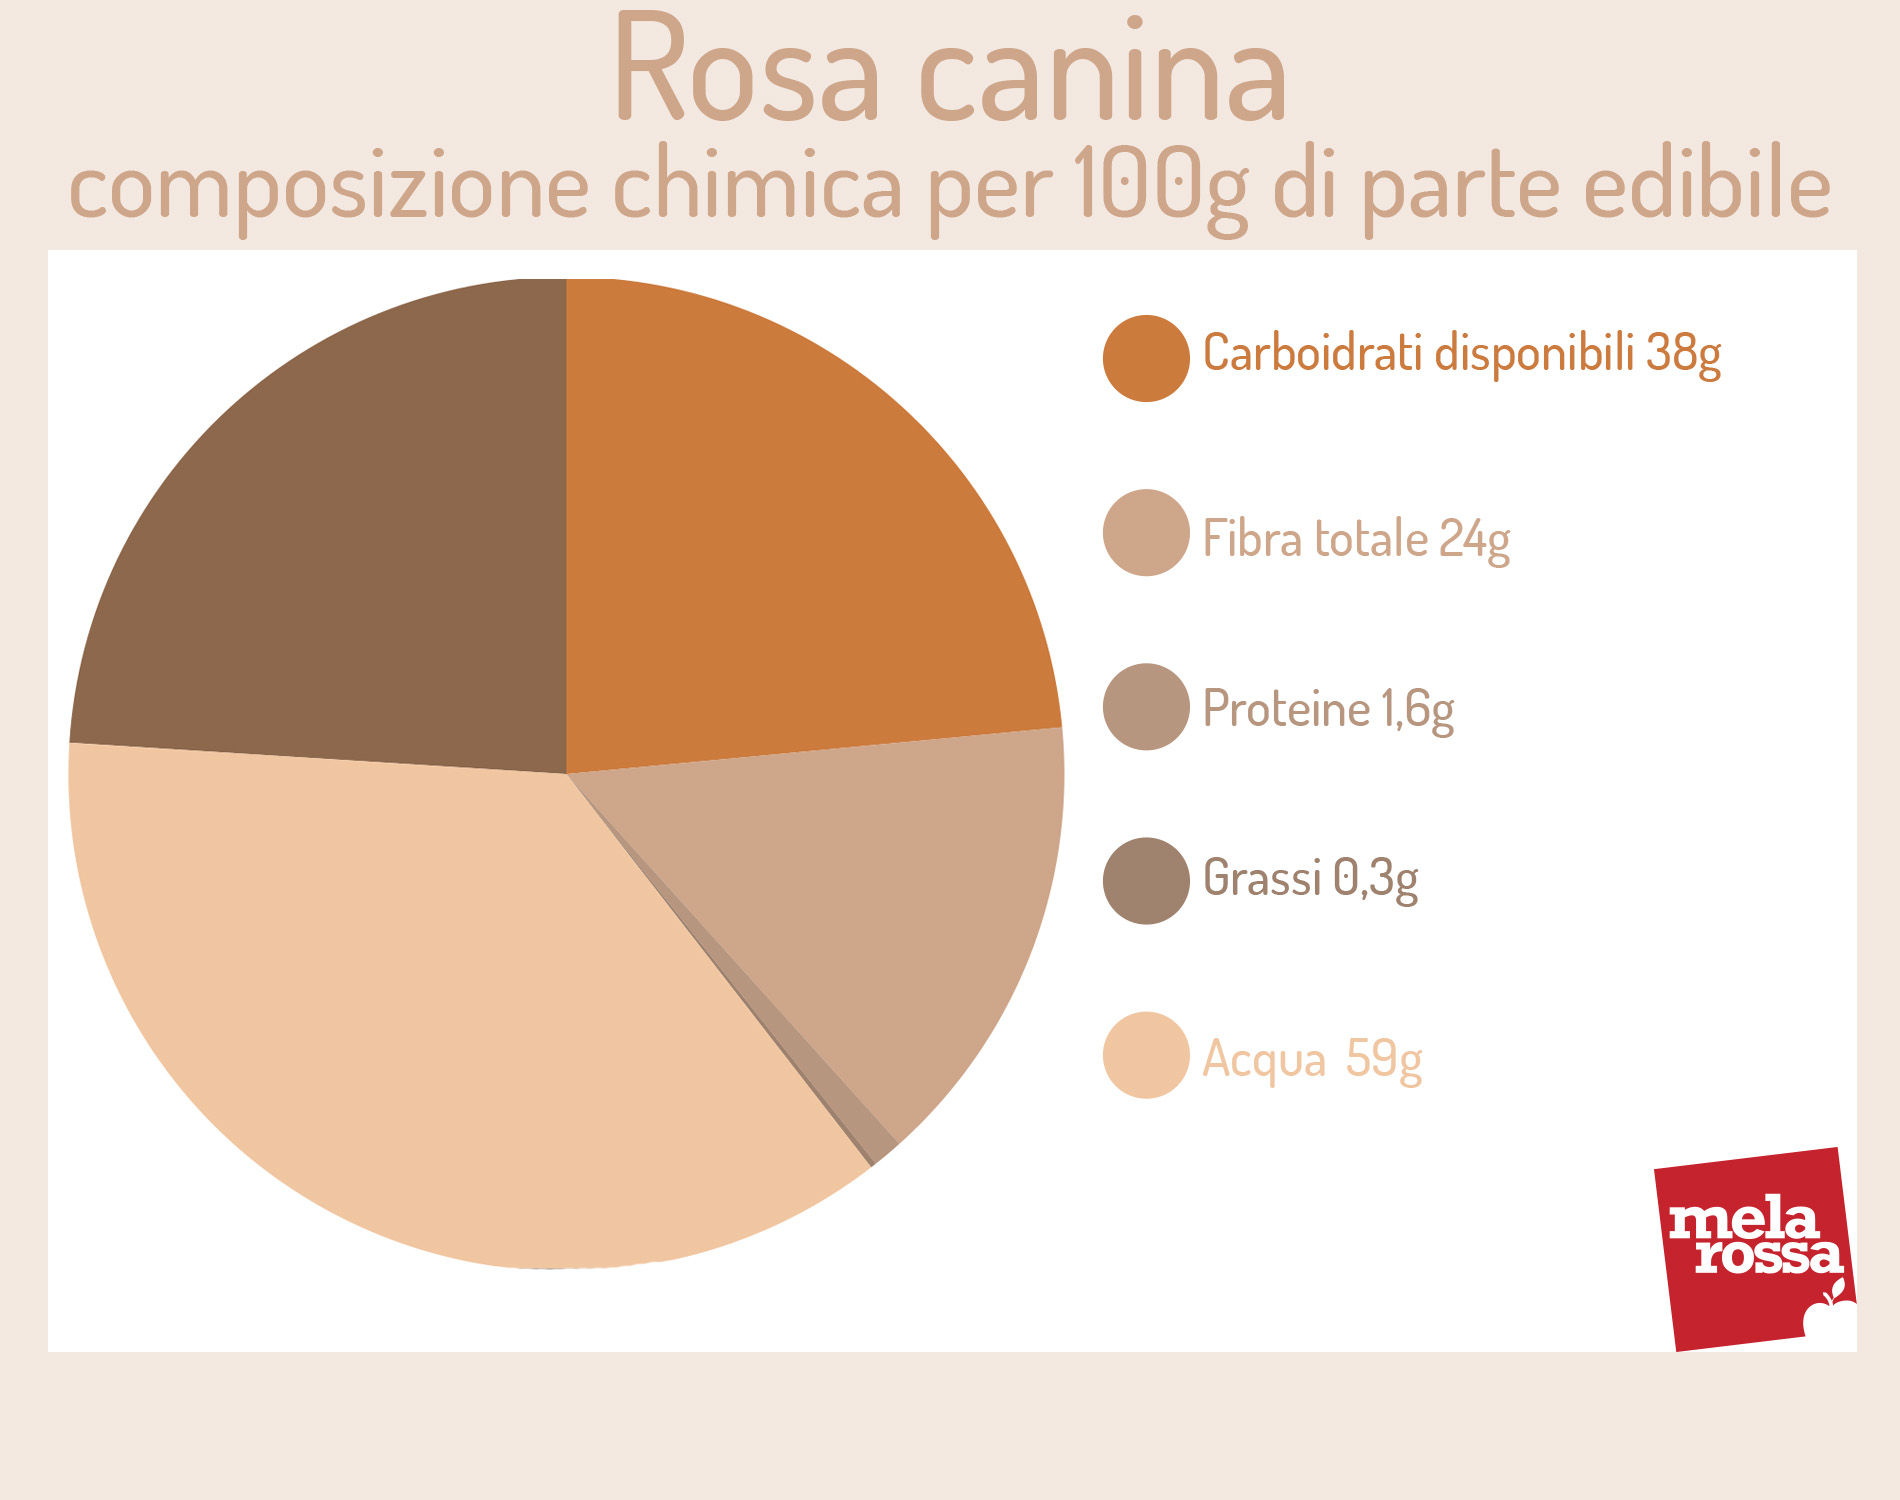 rosa canina: valori nutrizionali